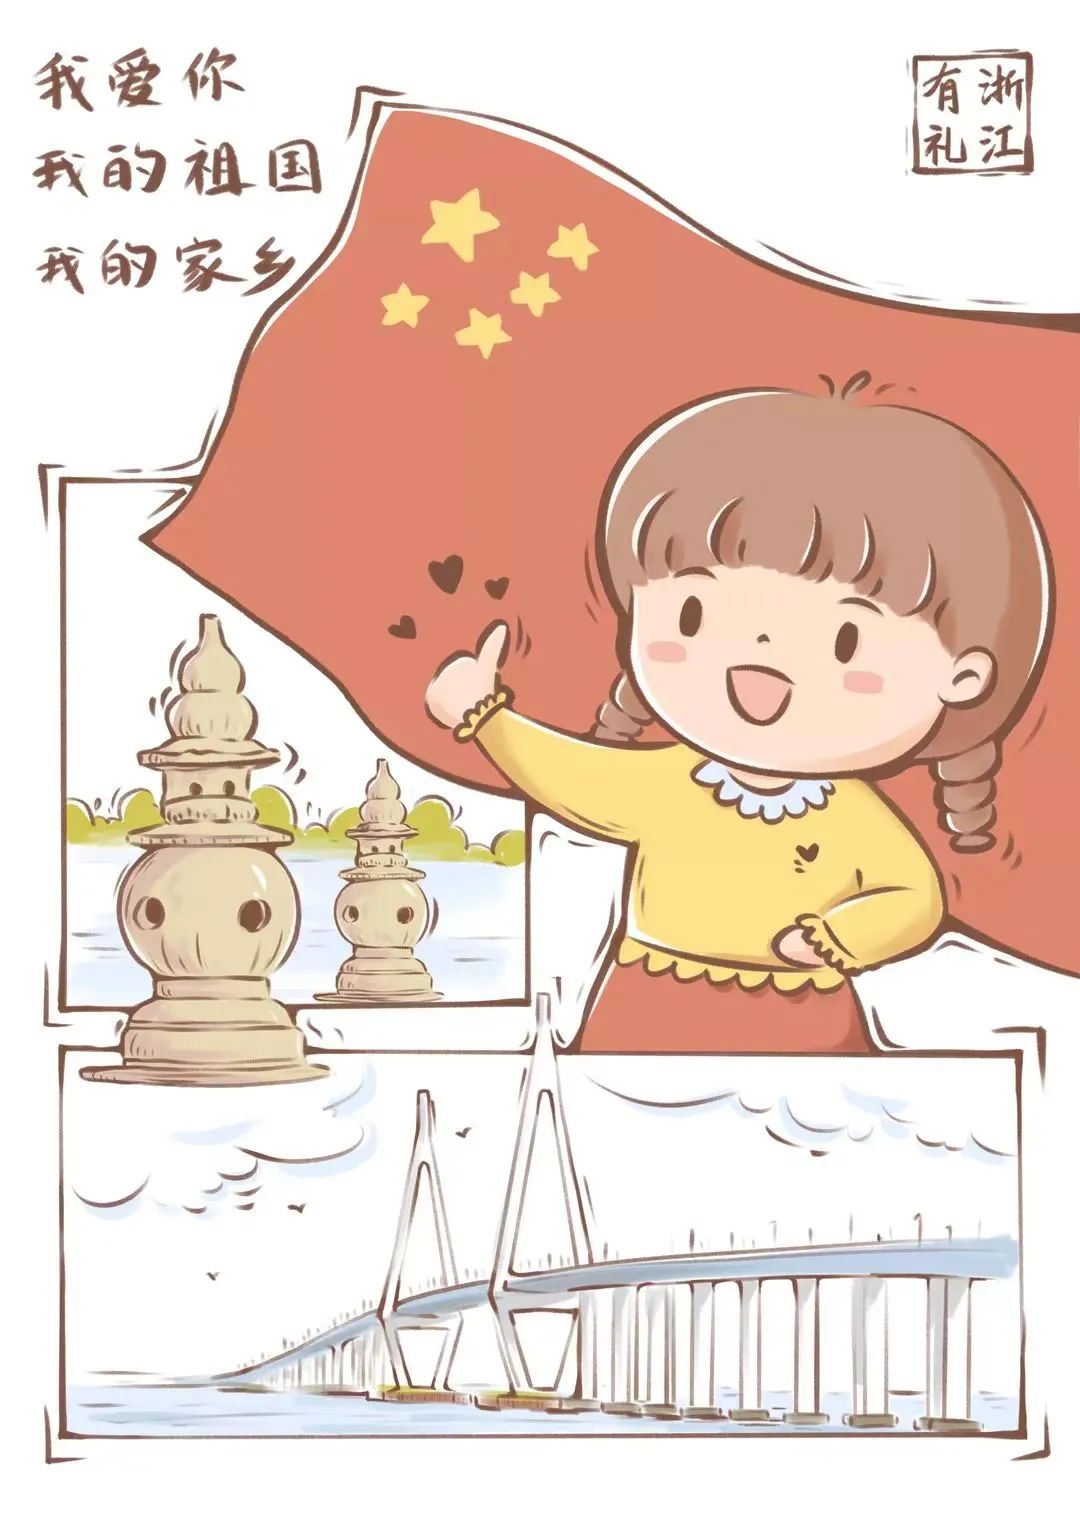 慈溪移民文化绘画图片